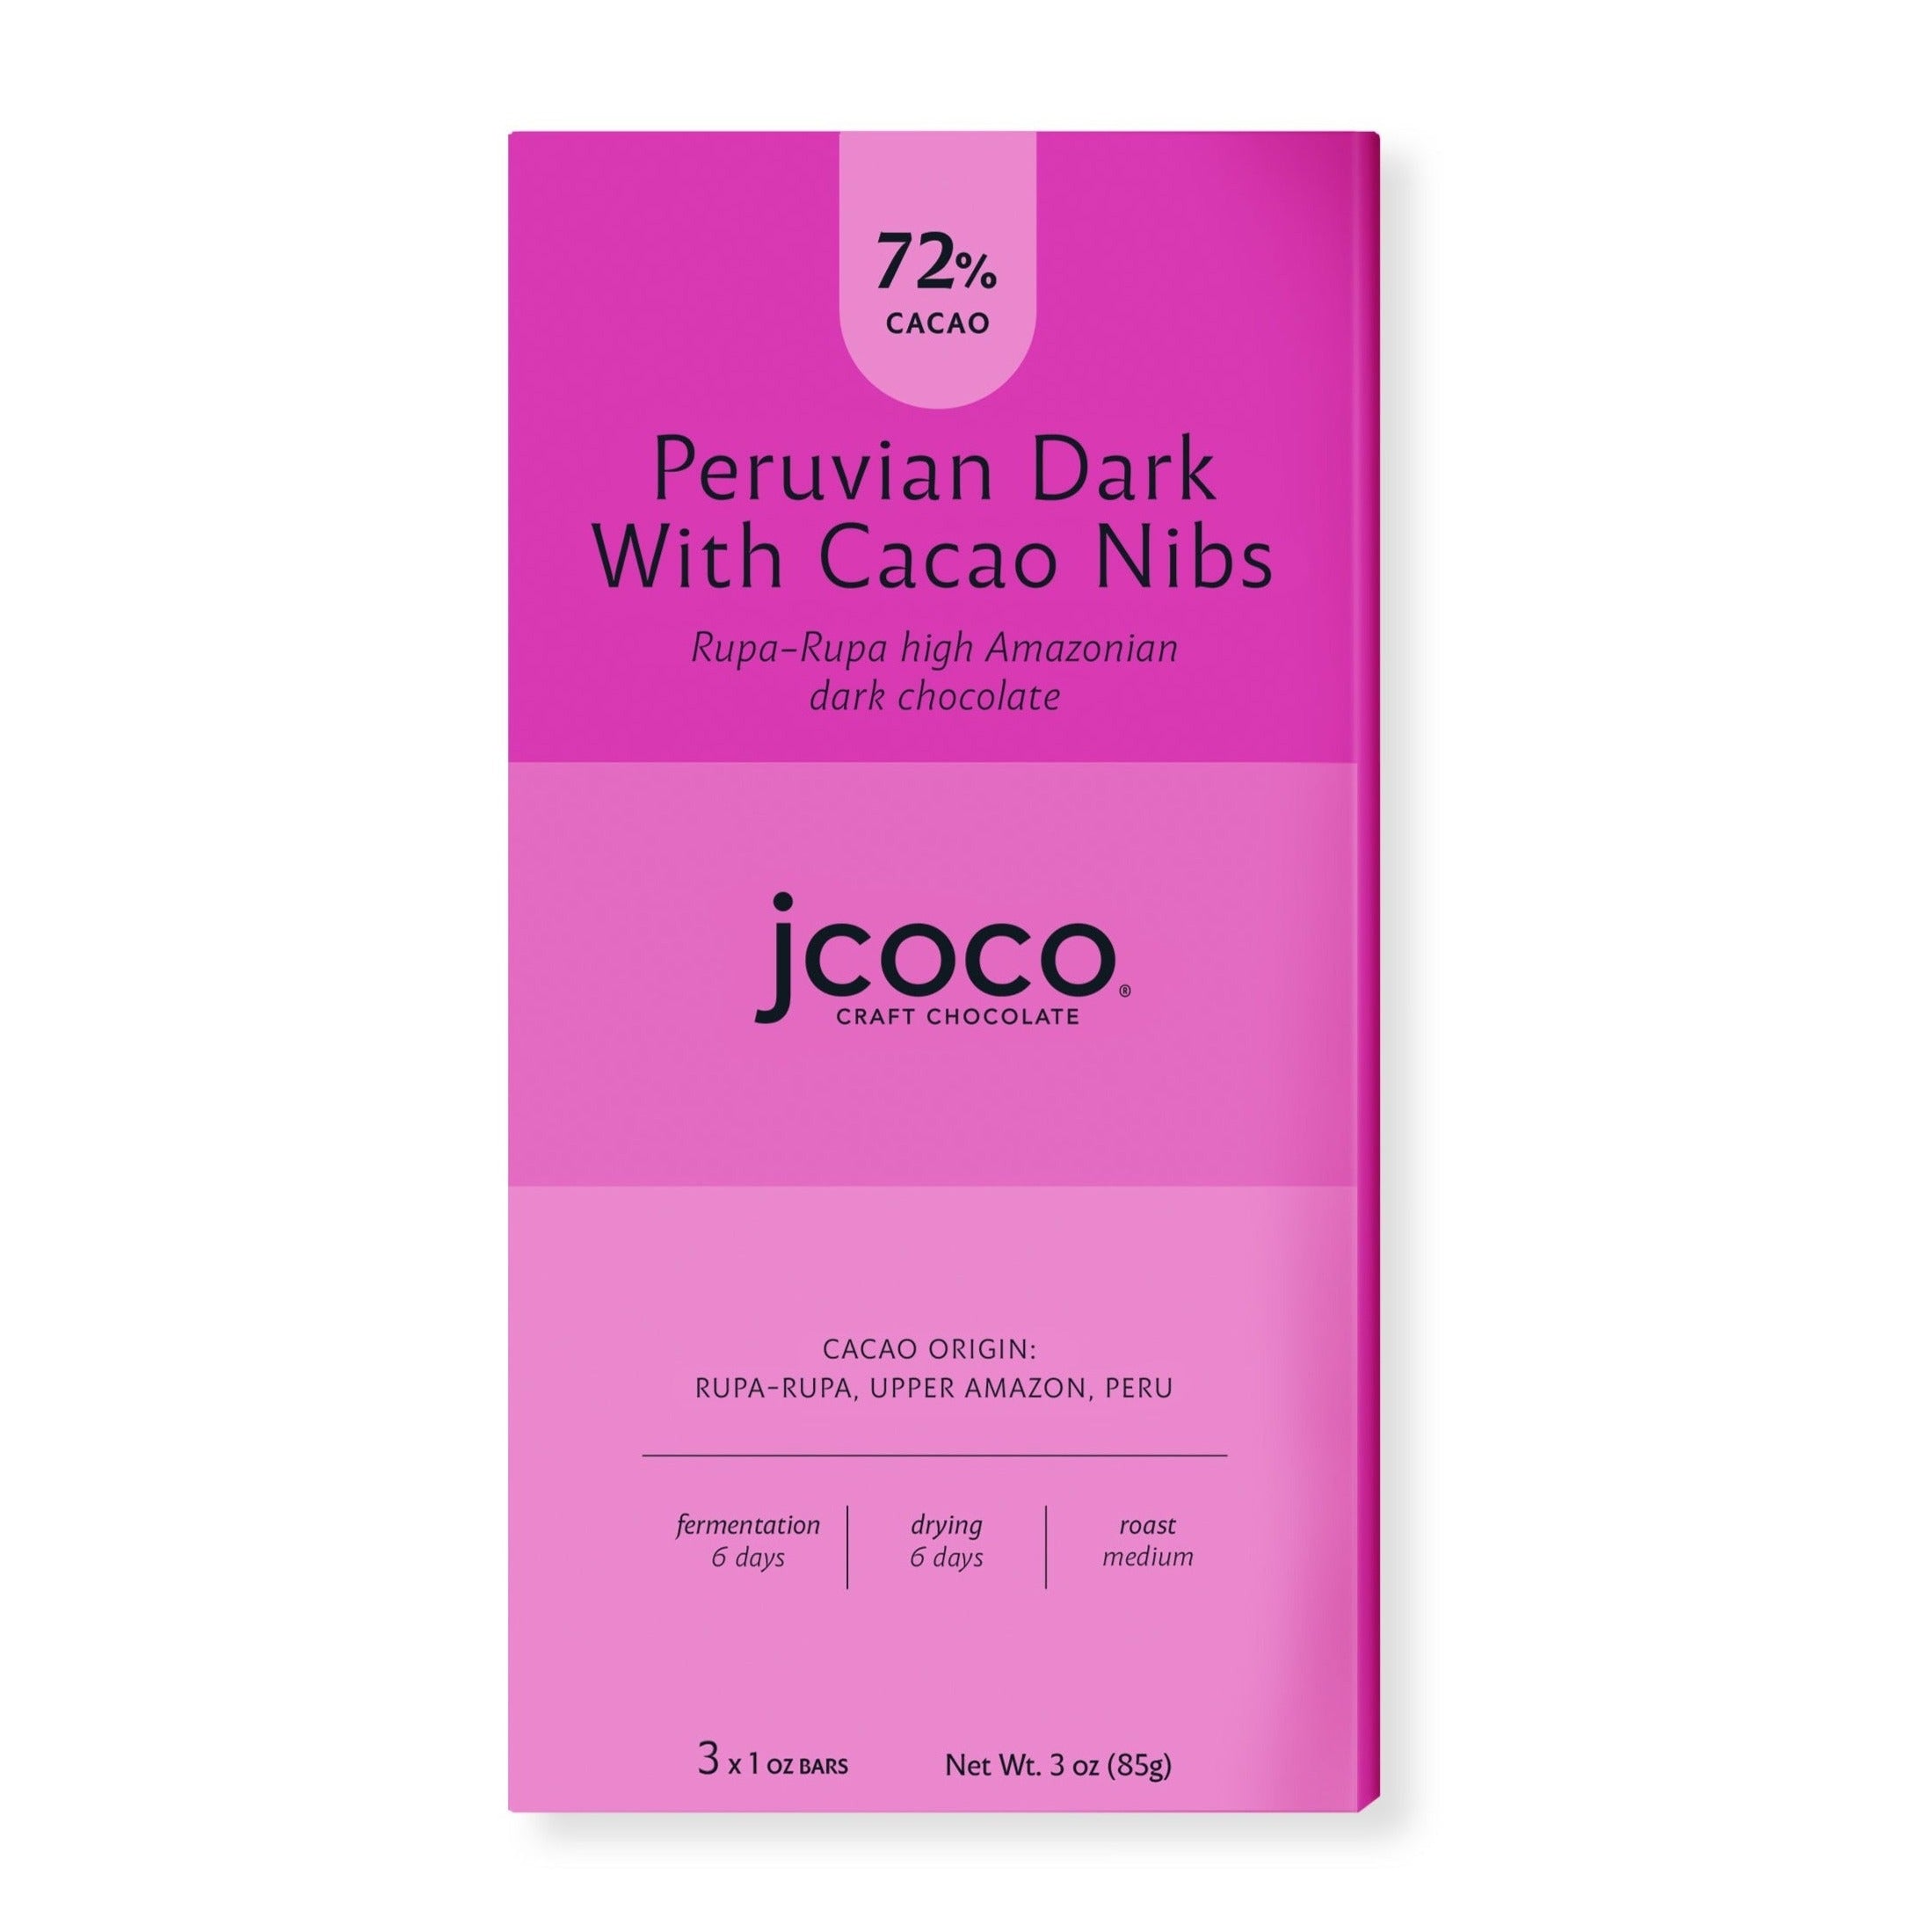 Peruvian Dark with Cacao Nibs